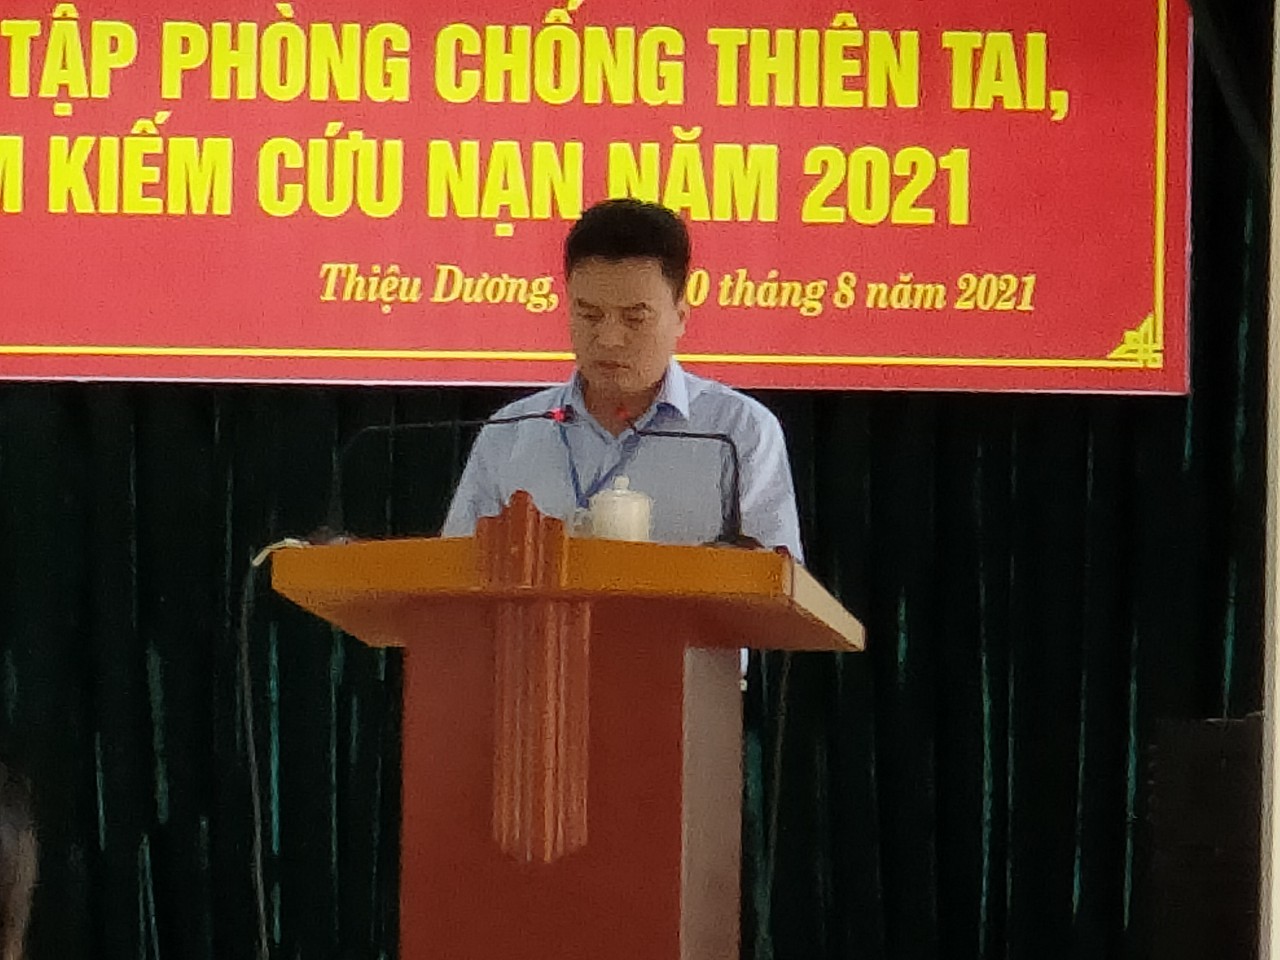 Chiều ngày 10/8/2021 UBND thành phố Thanh Hóa đã tổ chức diễn tập phòng chống thiên tai và tìm kiếm cứu nạn năm 2021 trên địa bàn phường Thiệu Dương.